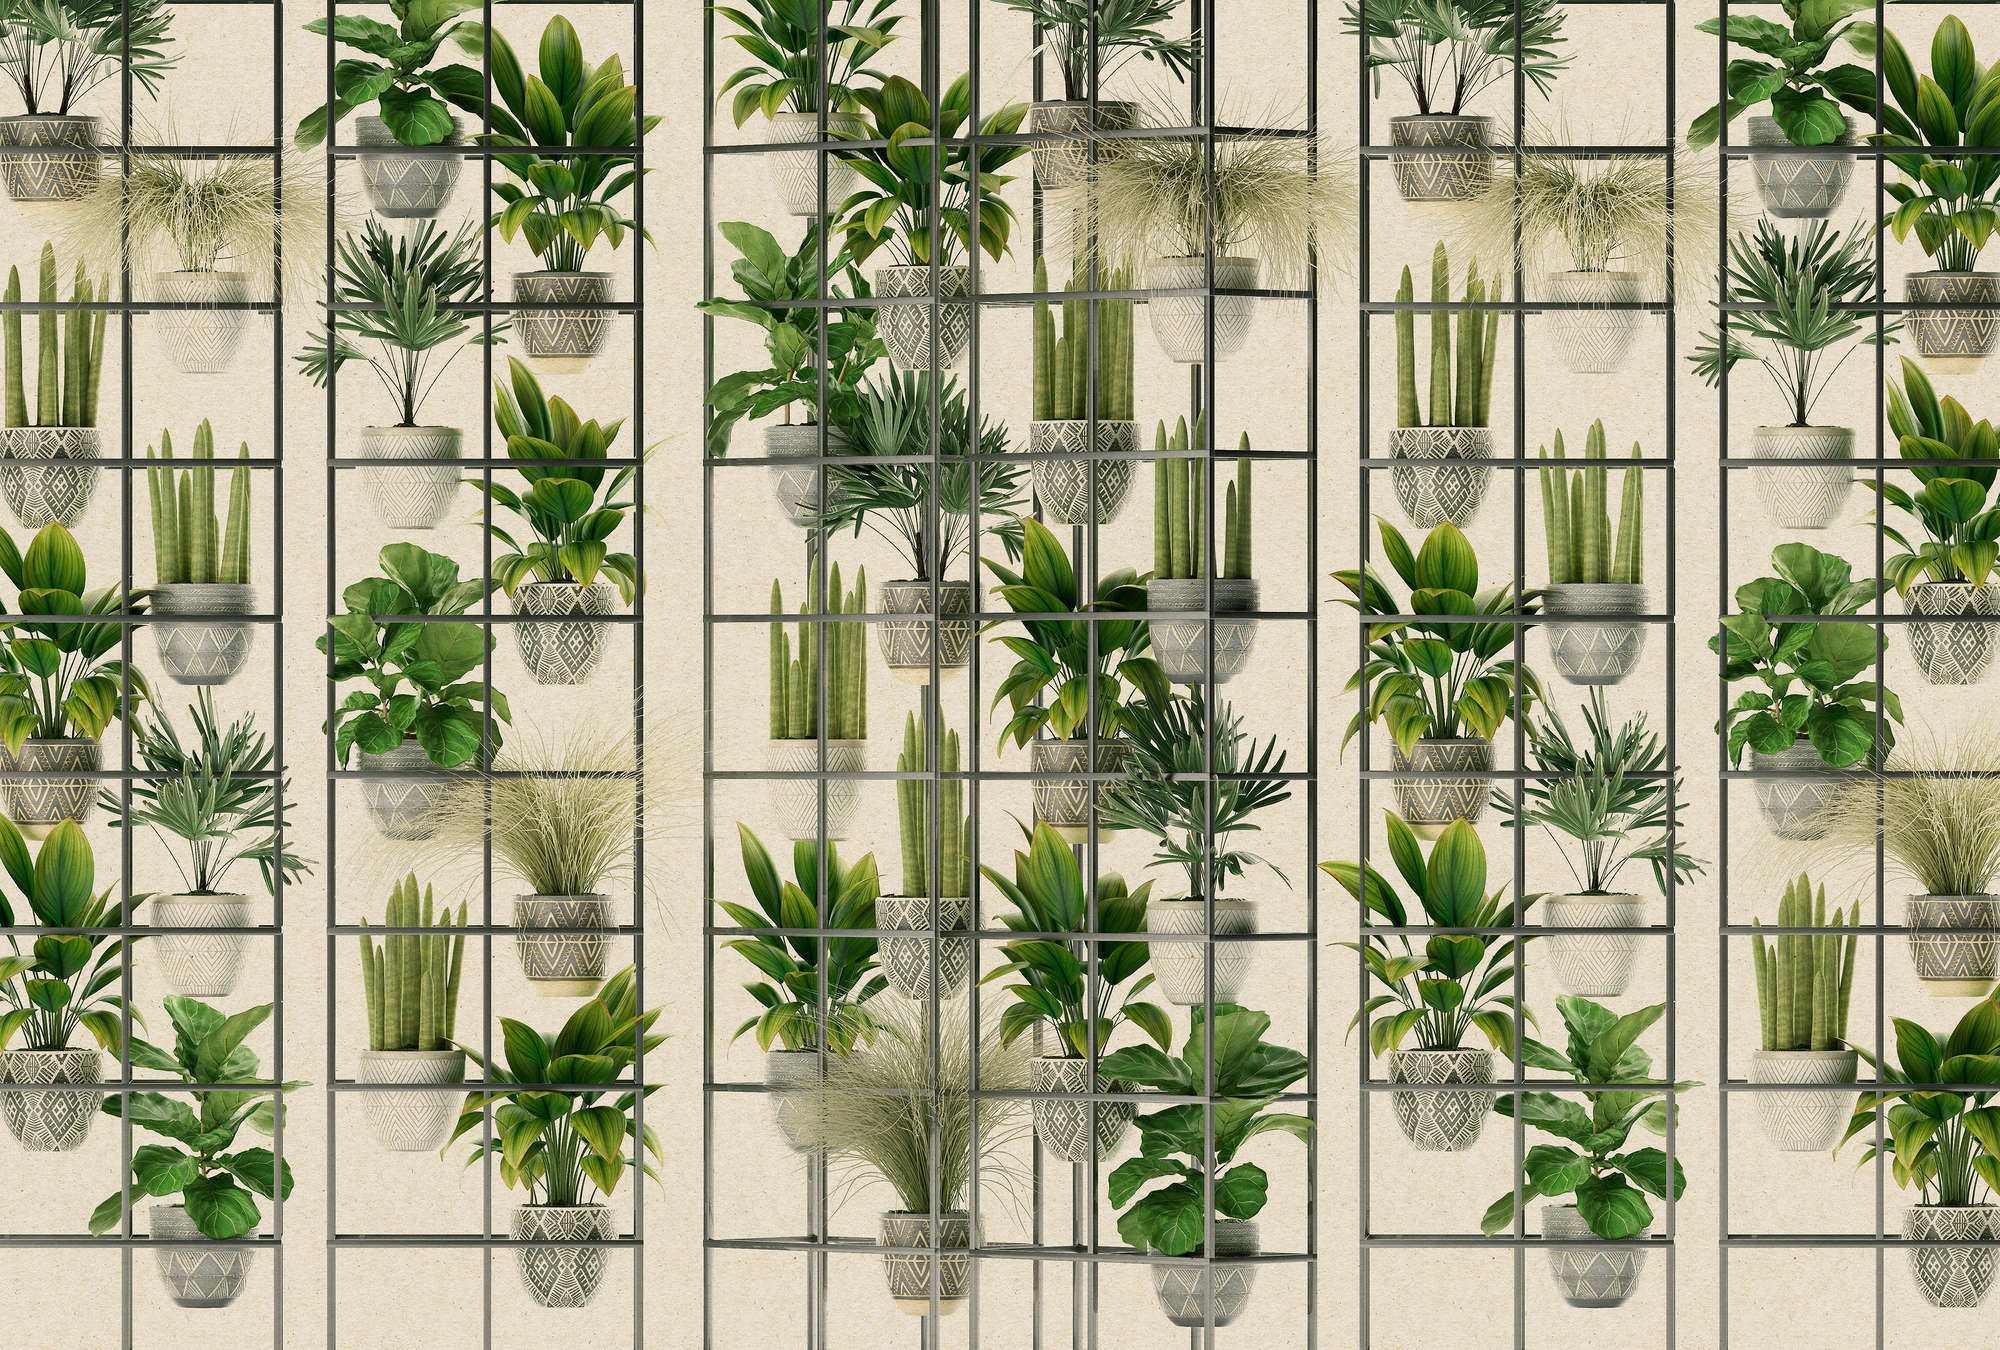             Plant Shop 2 - Papier peint panoramique mur de plantes modernes en vert & gris
        